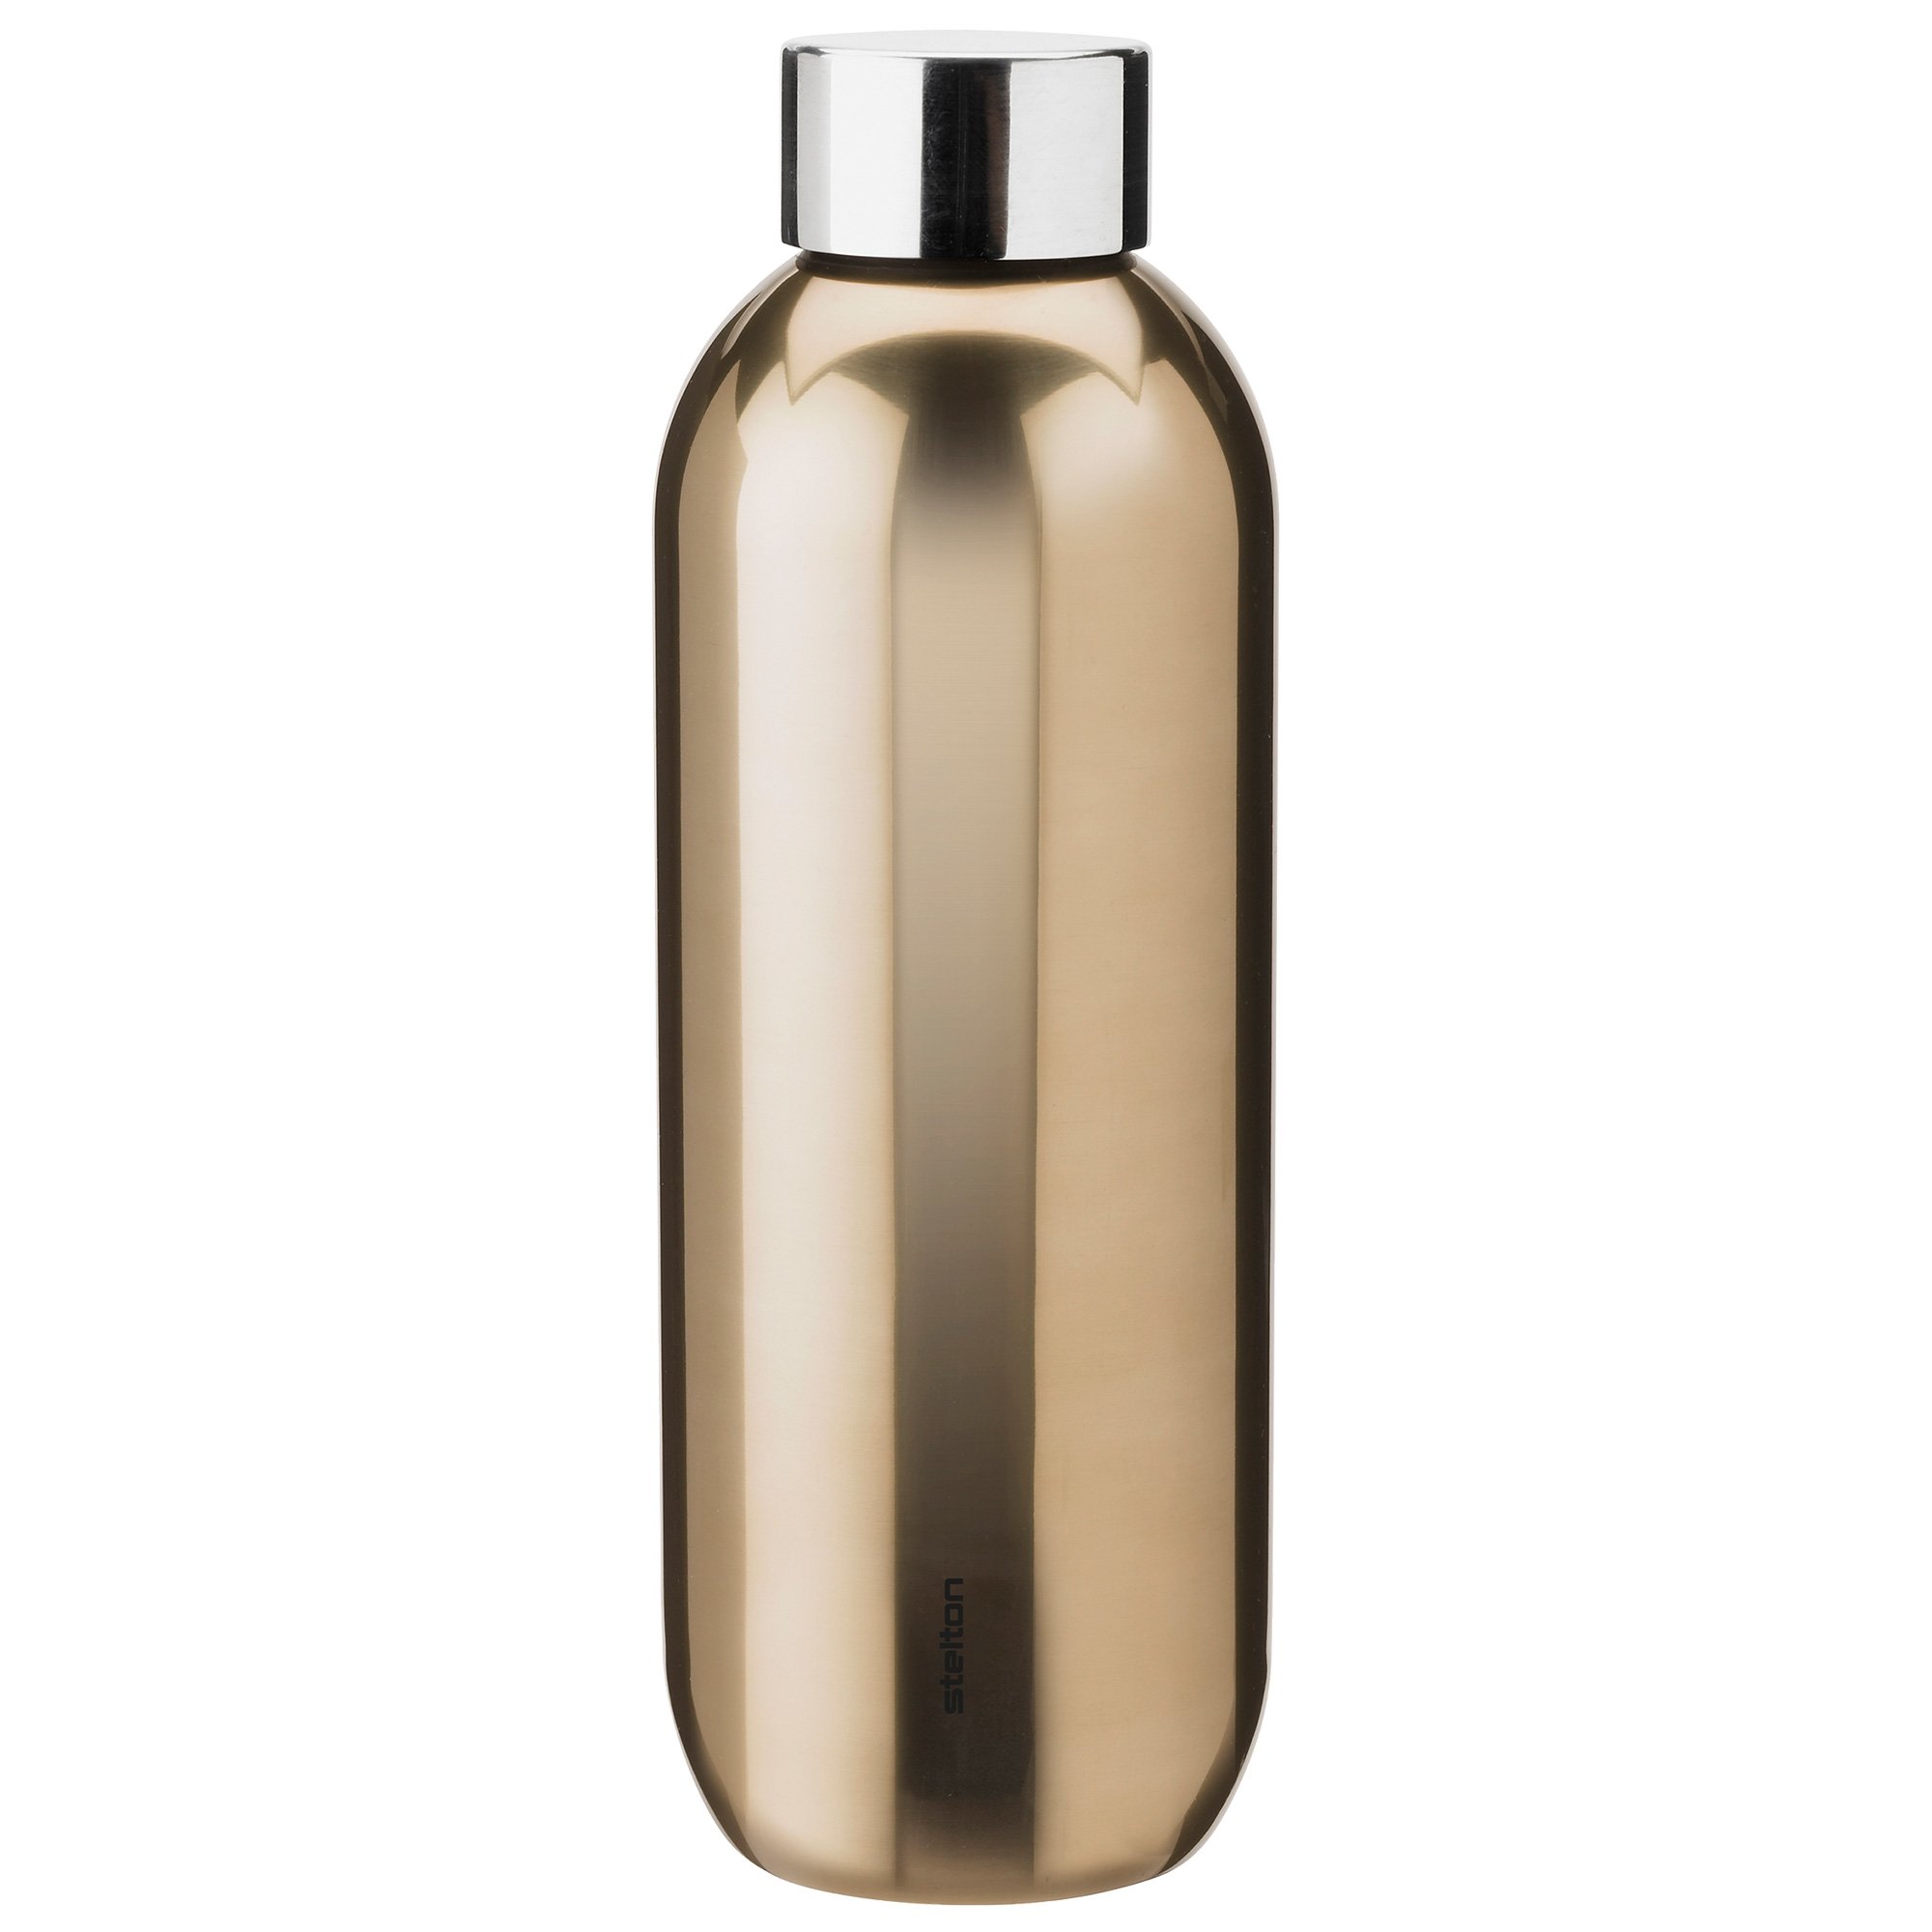 Stelton Keep Cool Drikkeflaske 0,6 liter dark gold